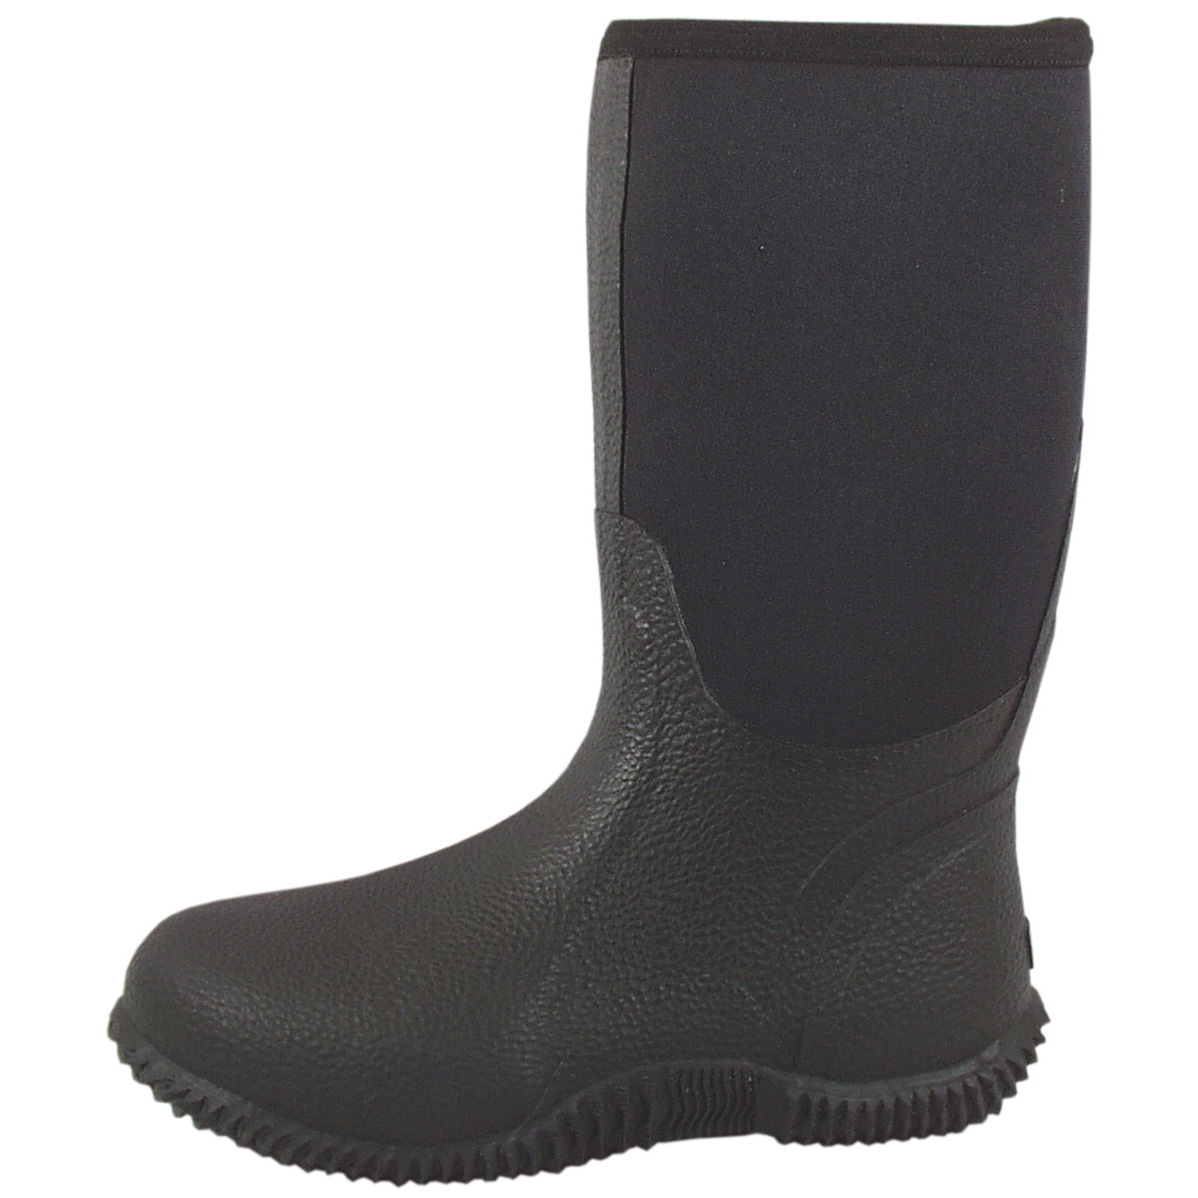 Smoky Mountain Boots Men's 4712 Amphibian 12" Neoprene Waterproof Boot - Black